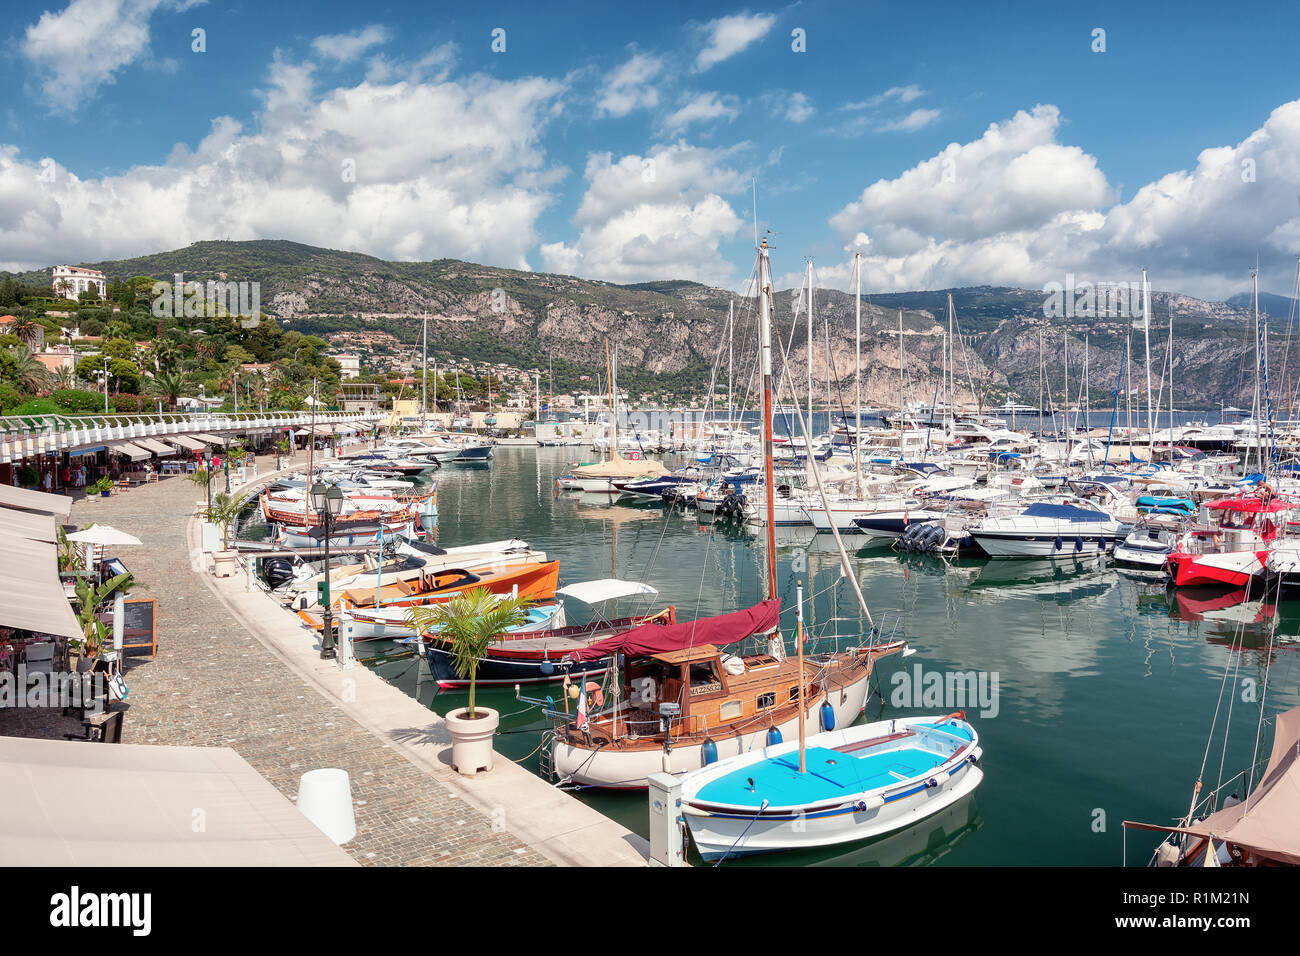 Saint-Jean-Cap-Ferrat, Francia, 4 de septiembre de 2018: El puerto de la península de Saint-Jean-Cap-Ferrat en la Cote d'Azur en Francia Foto de stock